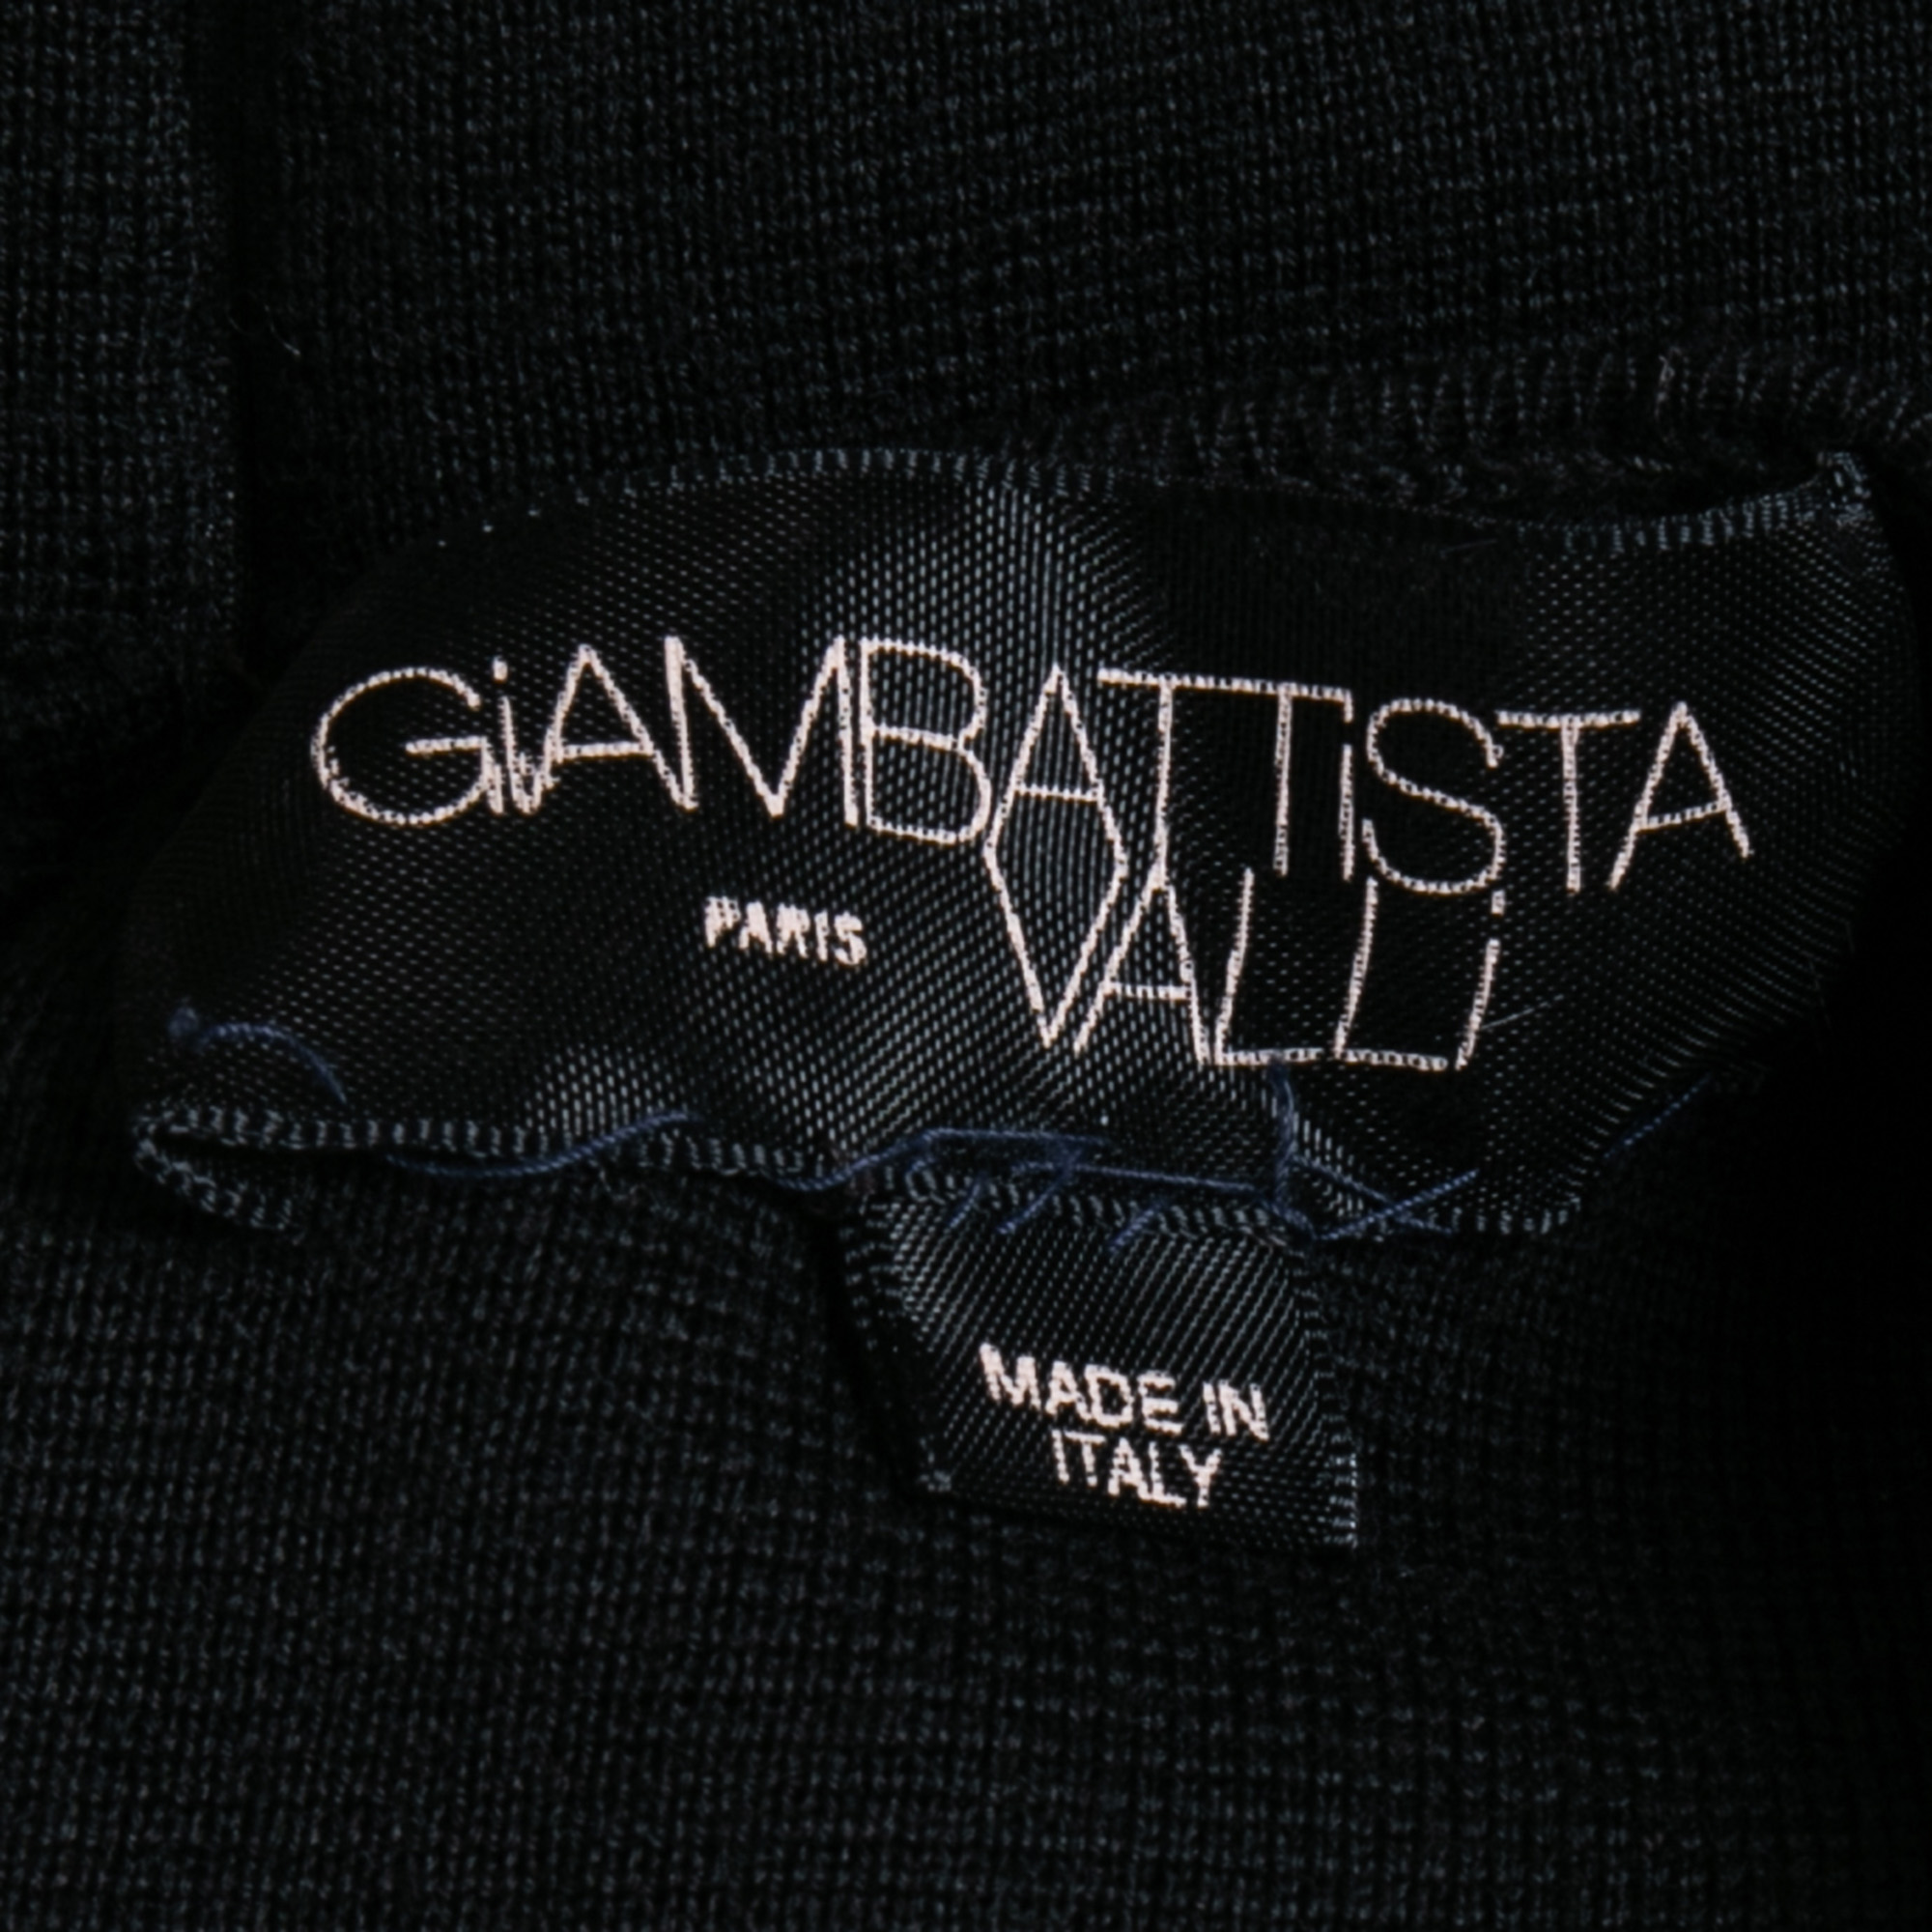 Giambattista Valli Black/Cream Wool Mini Peplum Dress L